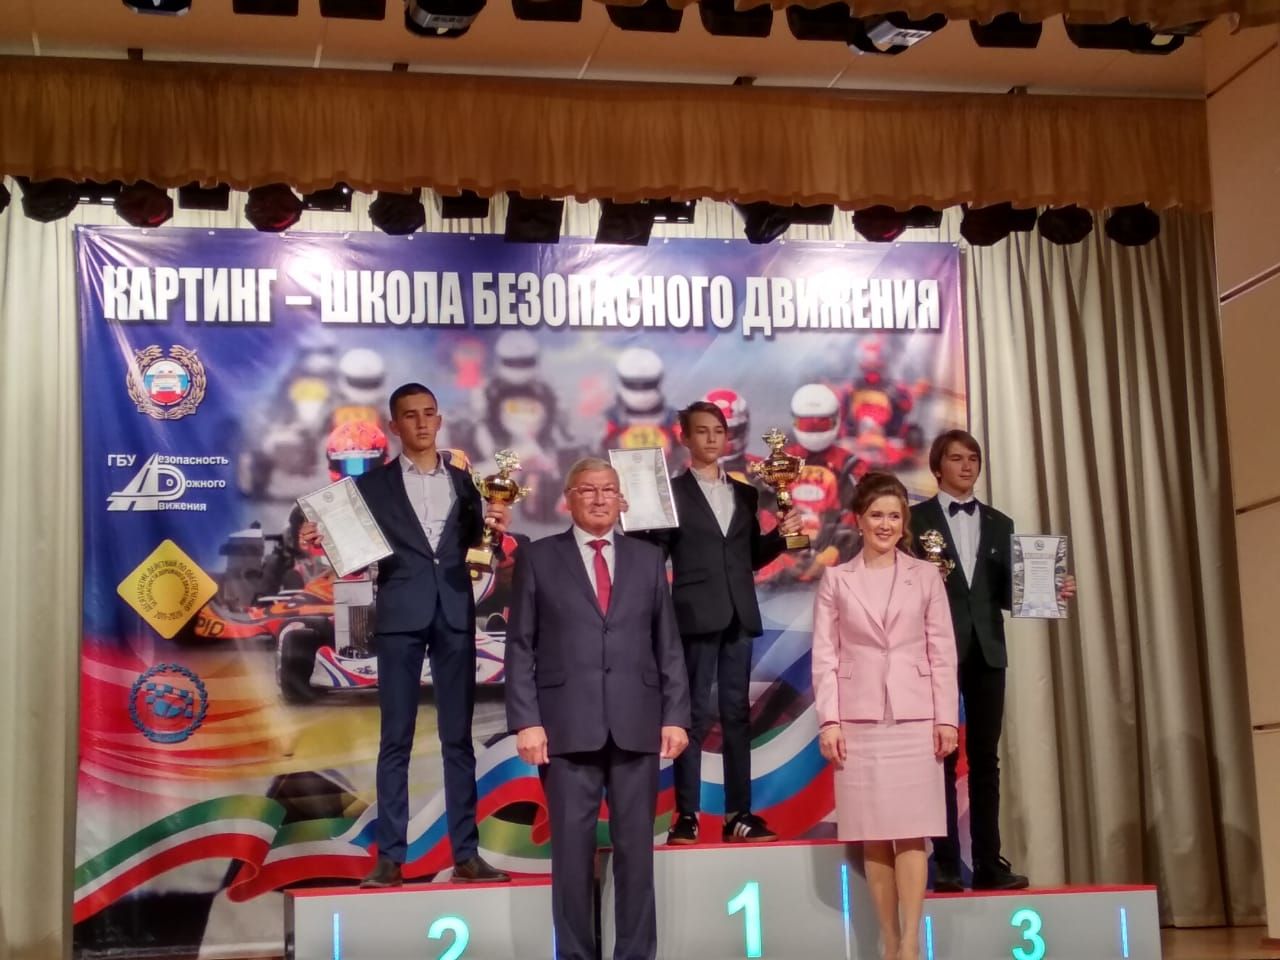 В церемонии награждения картингистов принял участие Президент республики